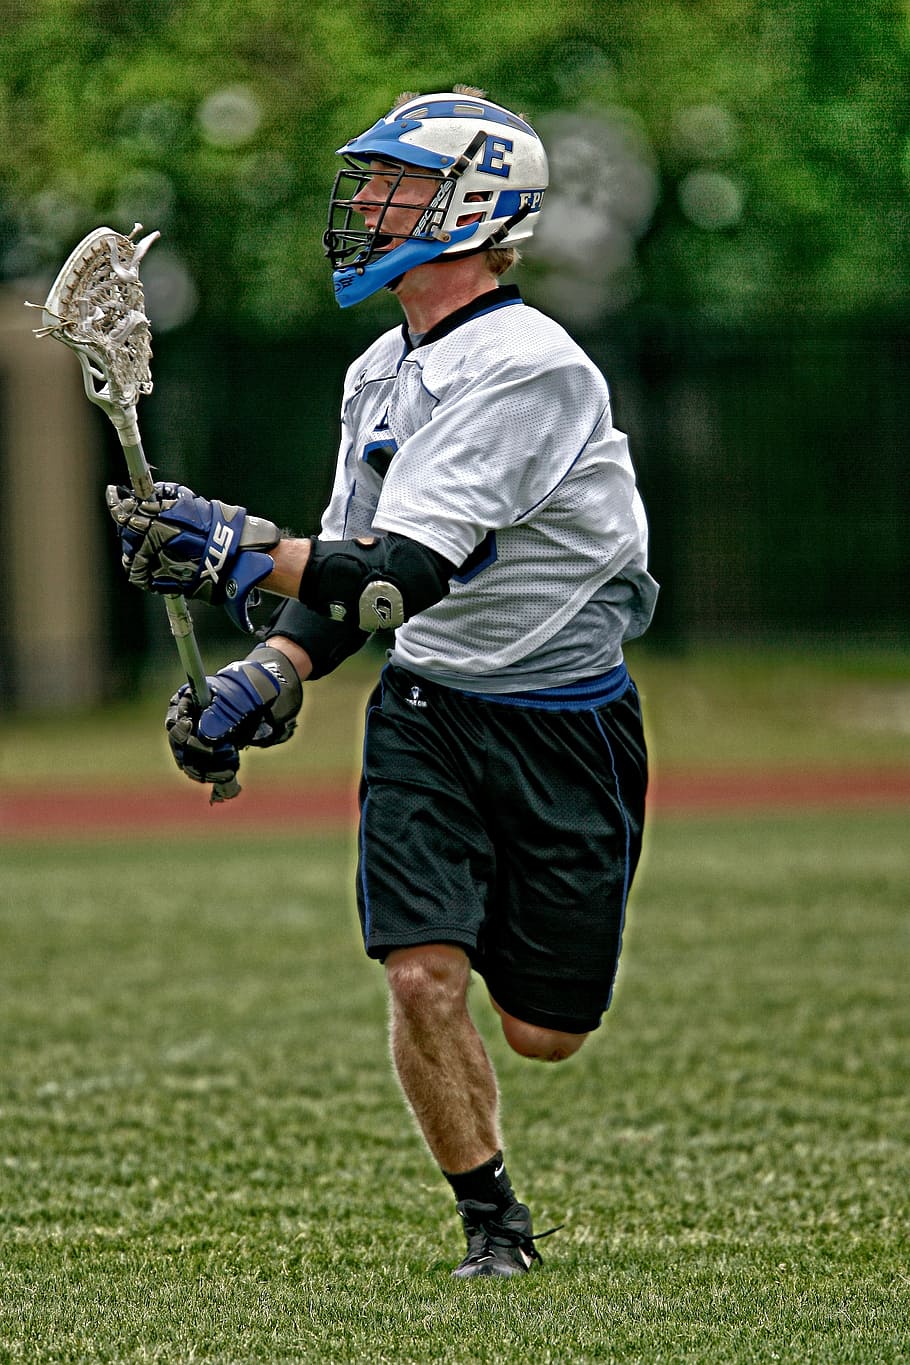 Hd Wallpaper Lacrosse Action Player Stick Sport Helmet Images, Photos, Reviews